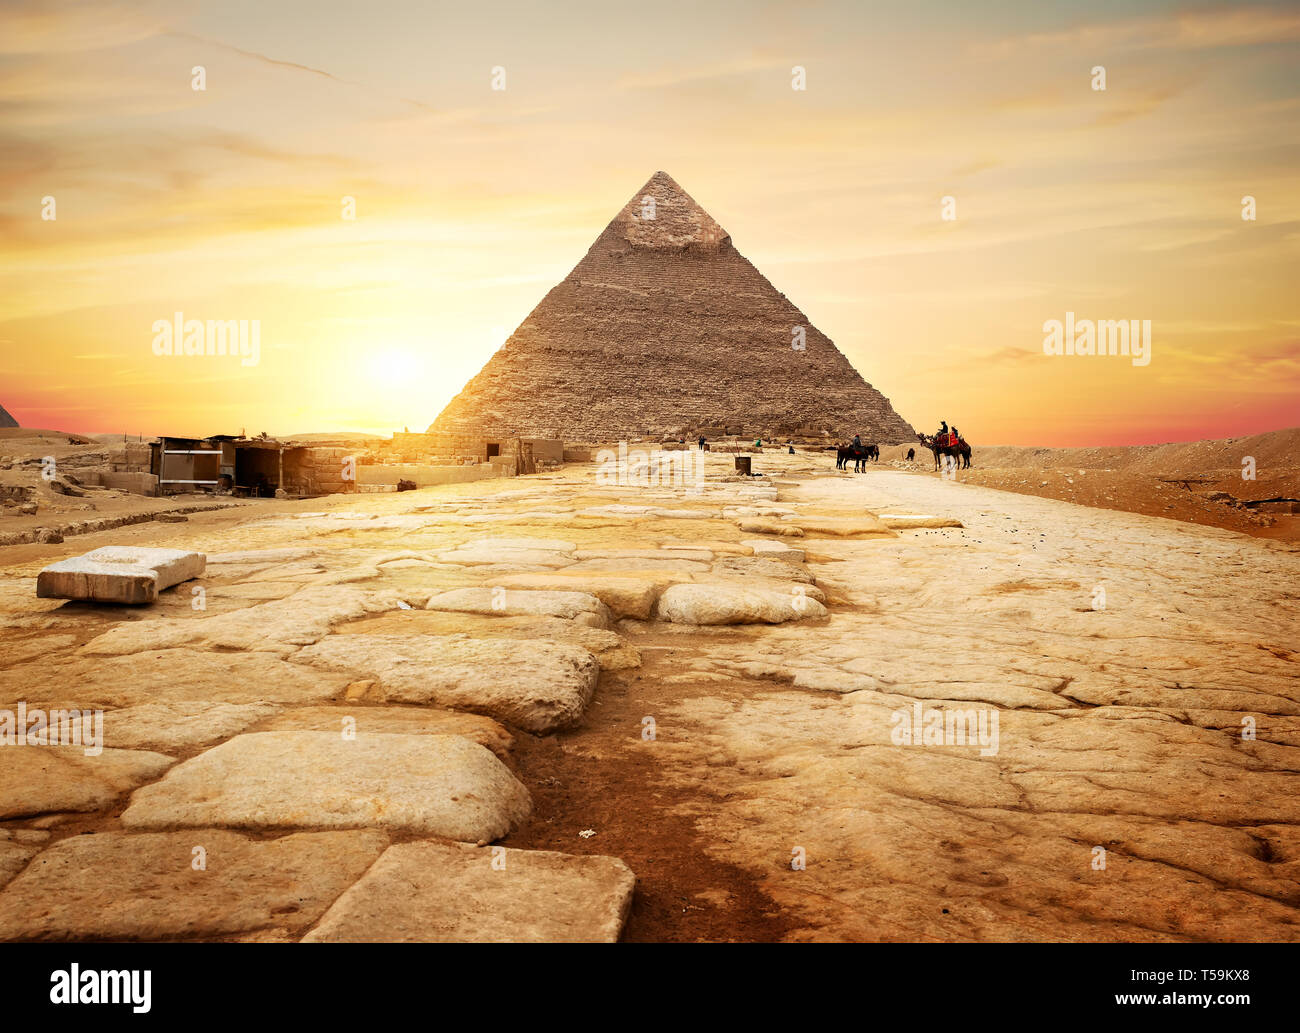 Piramide egizia nel deserto di sabbia e il cielo chiaro Foto Stock